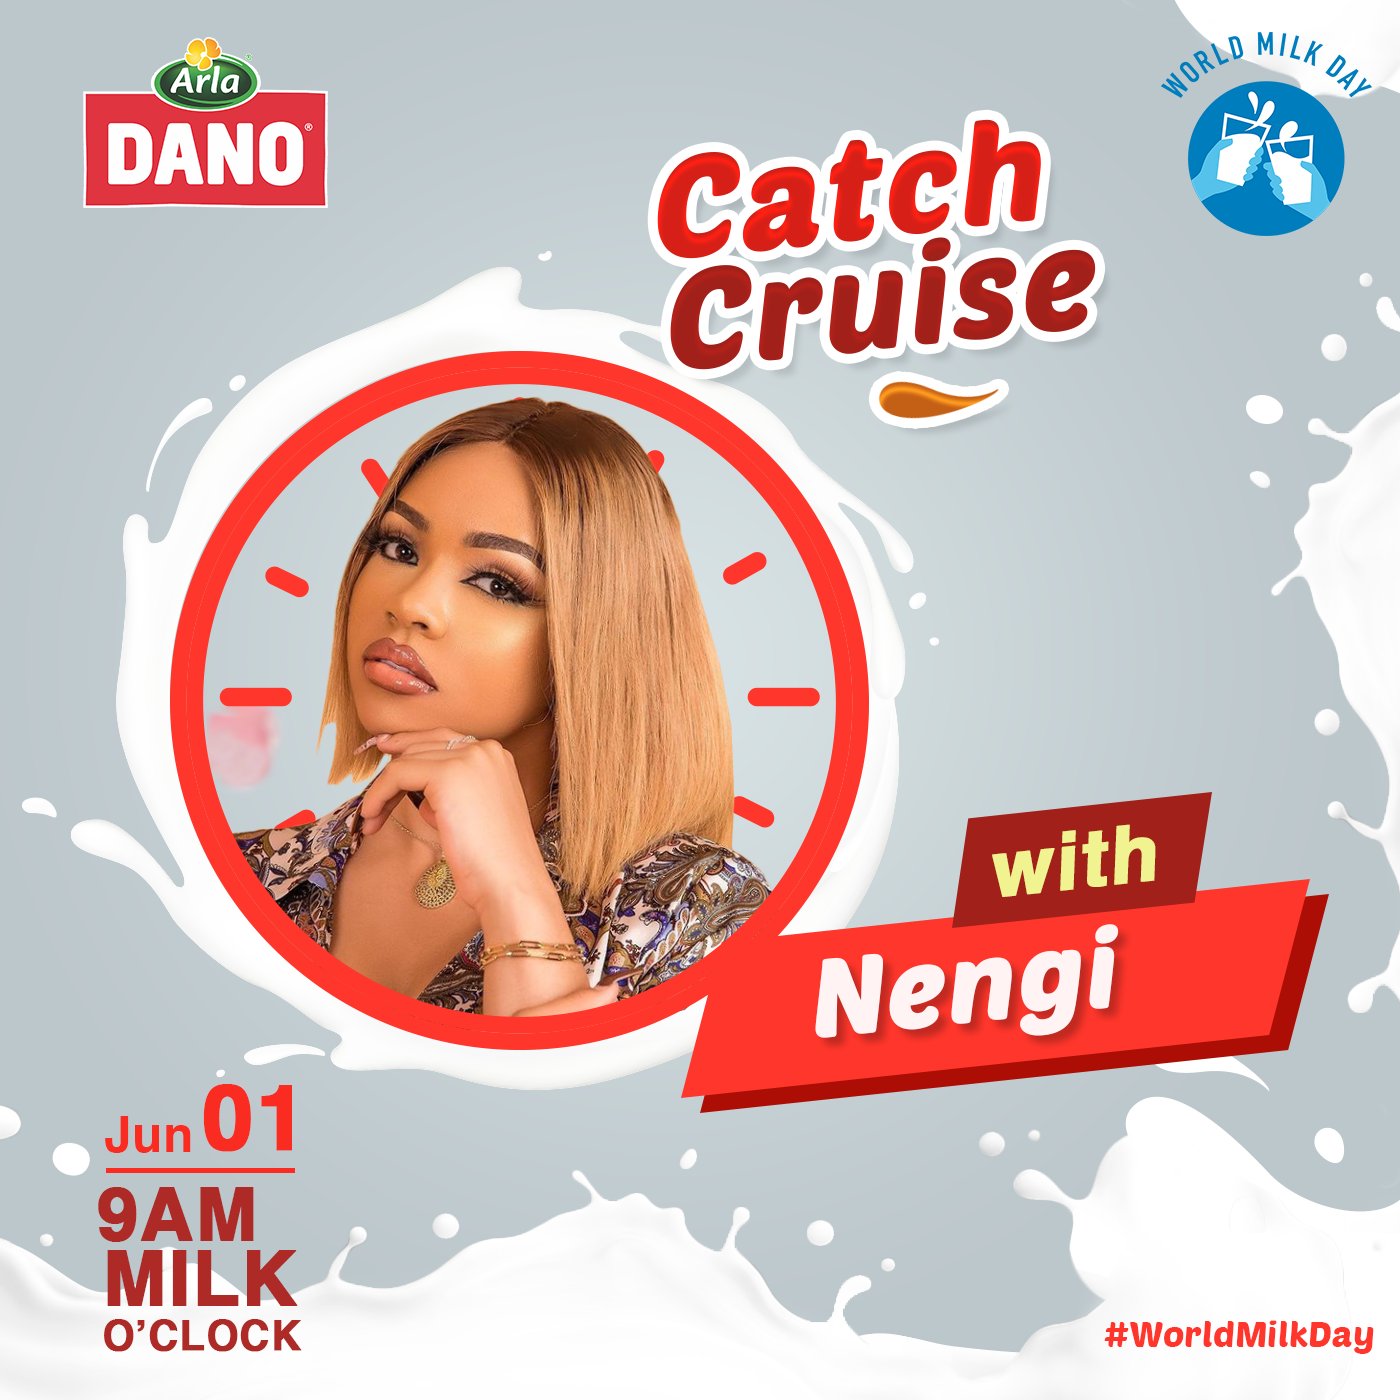 BBNaija Nengi to Host Dano Catch Cruise on World Milk Day